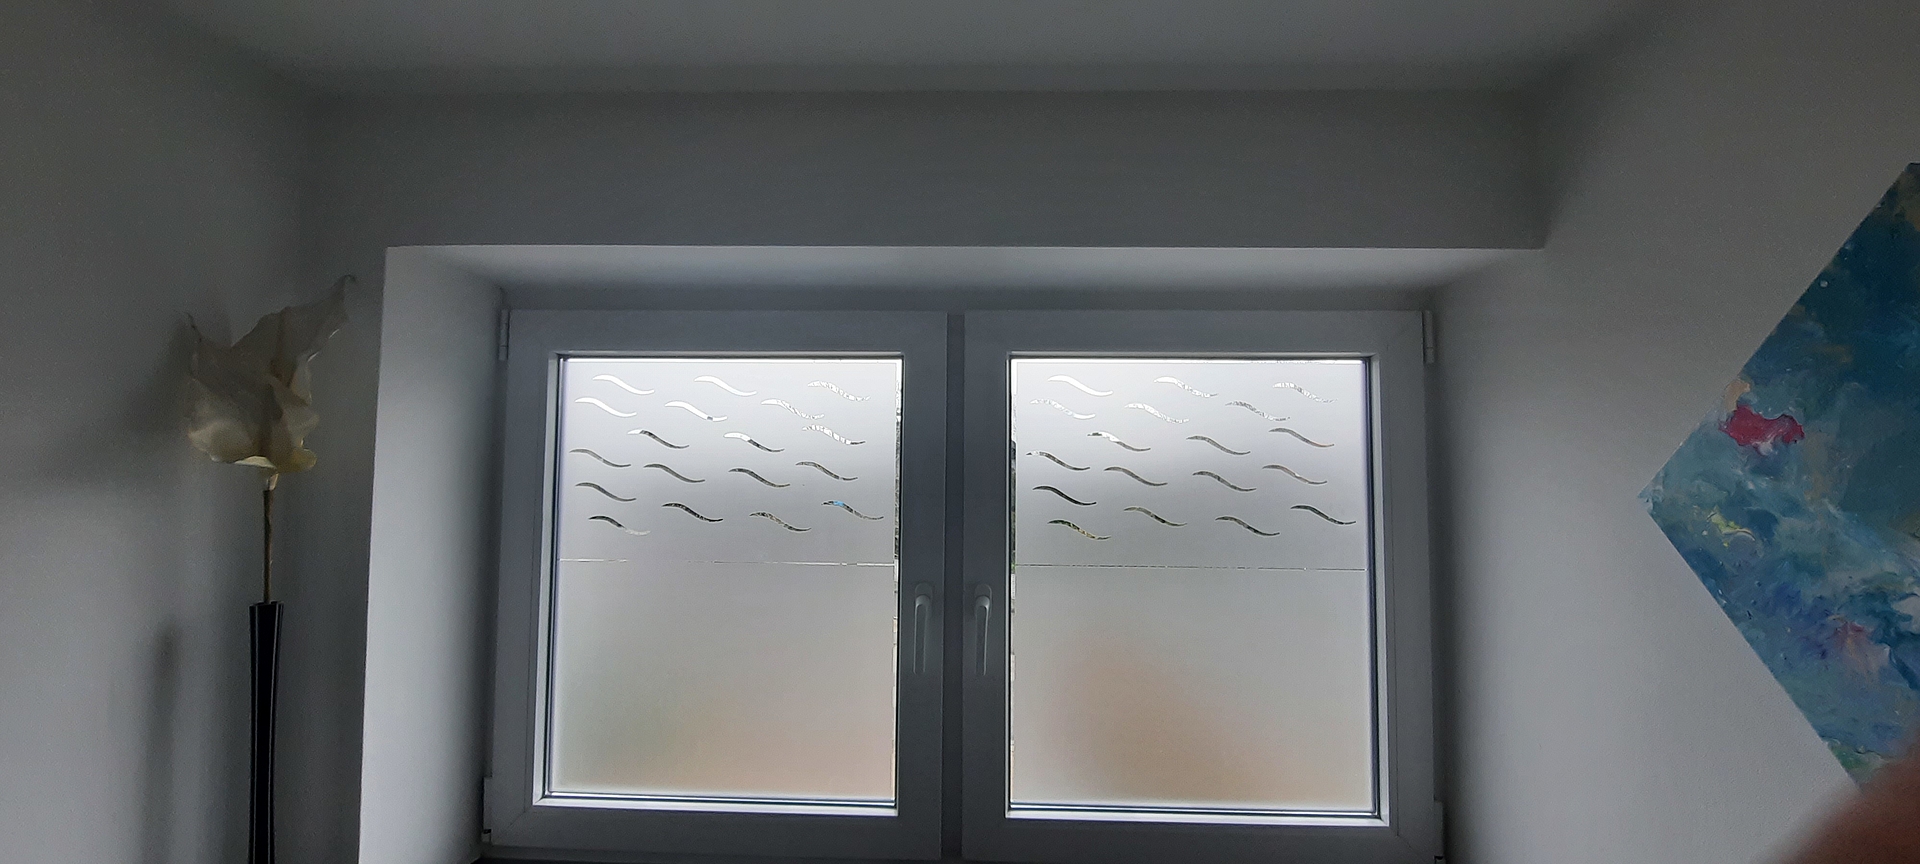 Sichtschutz in Privathaushalten für mehr Privatsphäre in der Küche, im Badezimmer oder Schlafzimmer